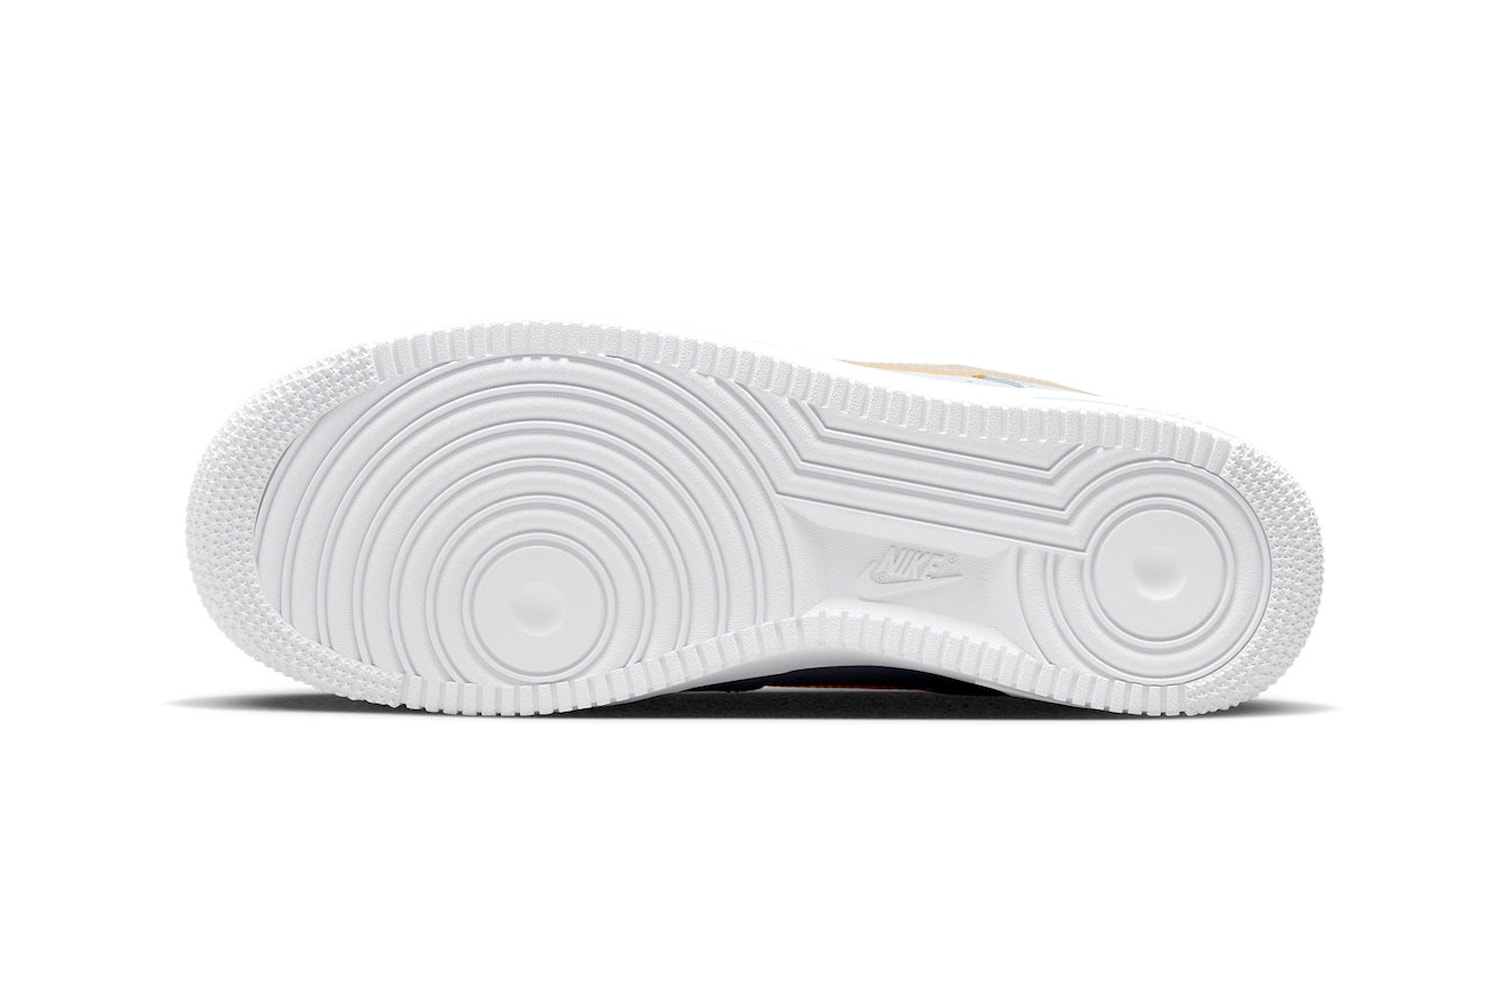 ナイキから筆で描いたスウッシュのエアフォース1の新作が登場 Nike Air Force 1 Low Brushstroke Swoosh White Yellow Official Look Release Info DX2646-100 Date Buy Price 